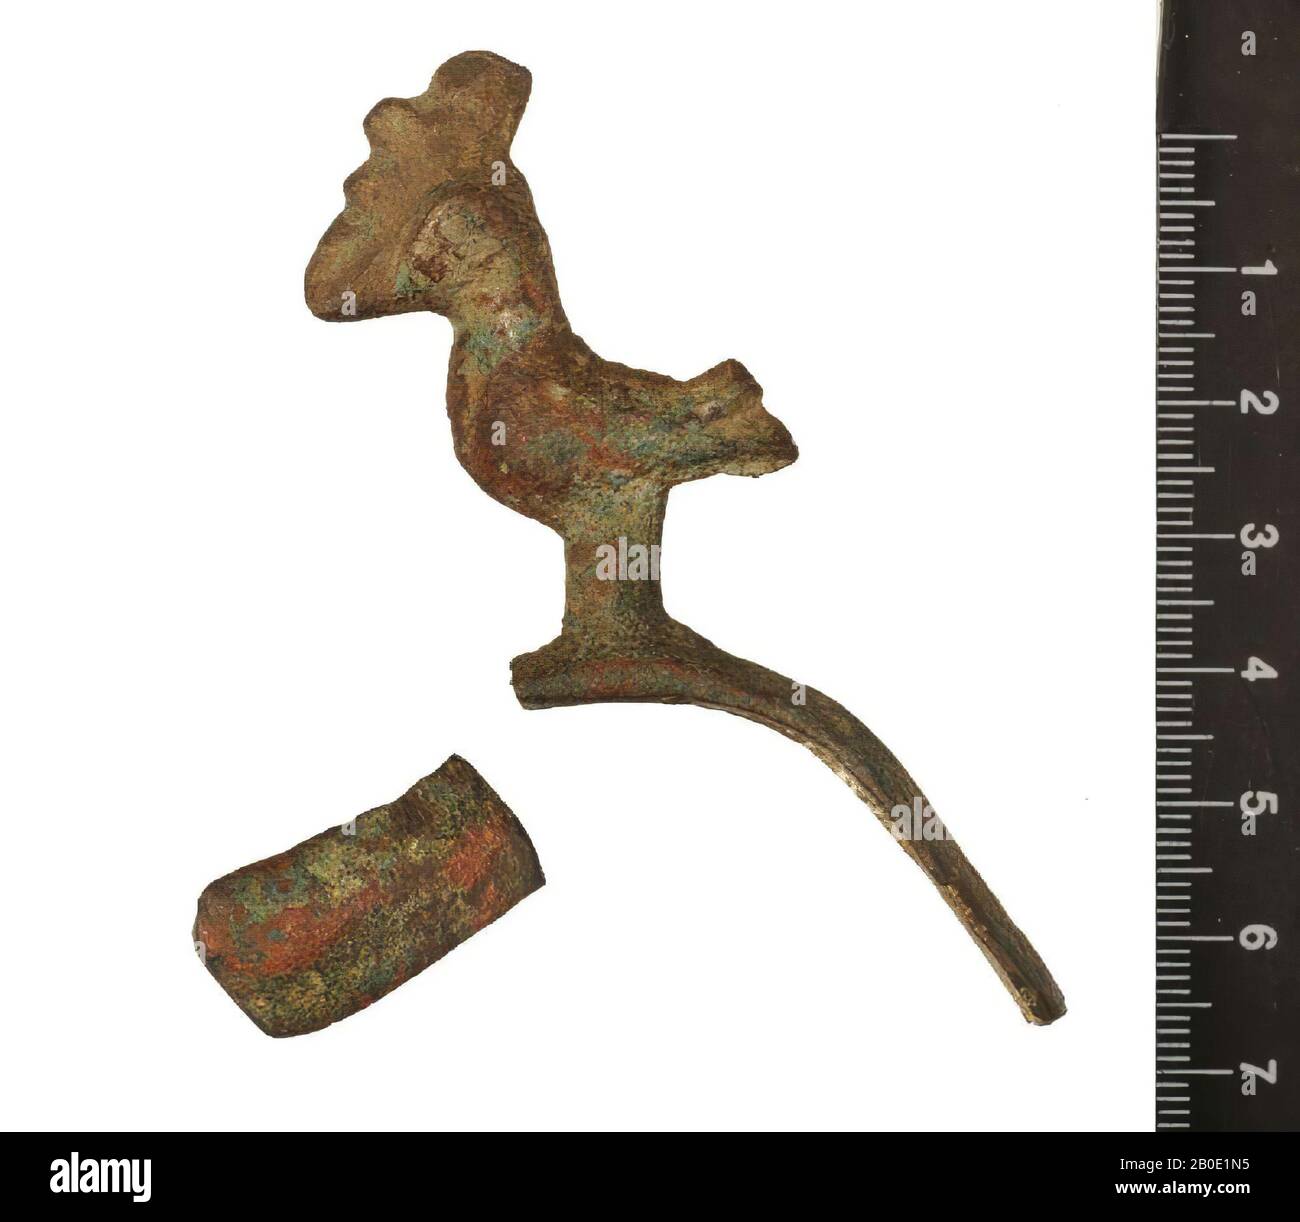 Ancien Proche-Orient, vaisselle, métal, bronze, H 12,6 cm, D 8,5 cm, emplacement, Iran Banque D'Images